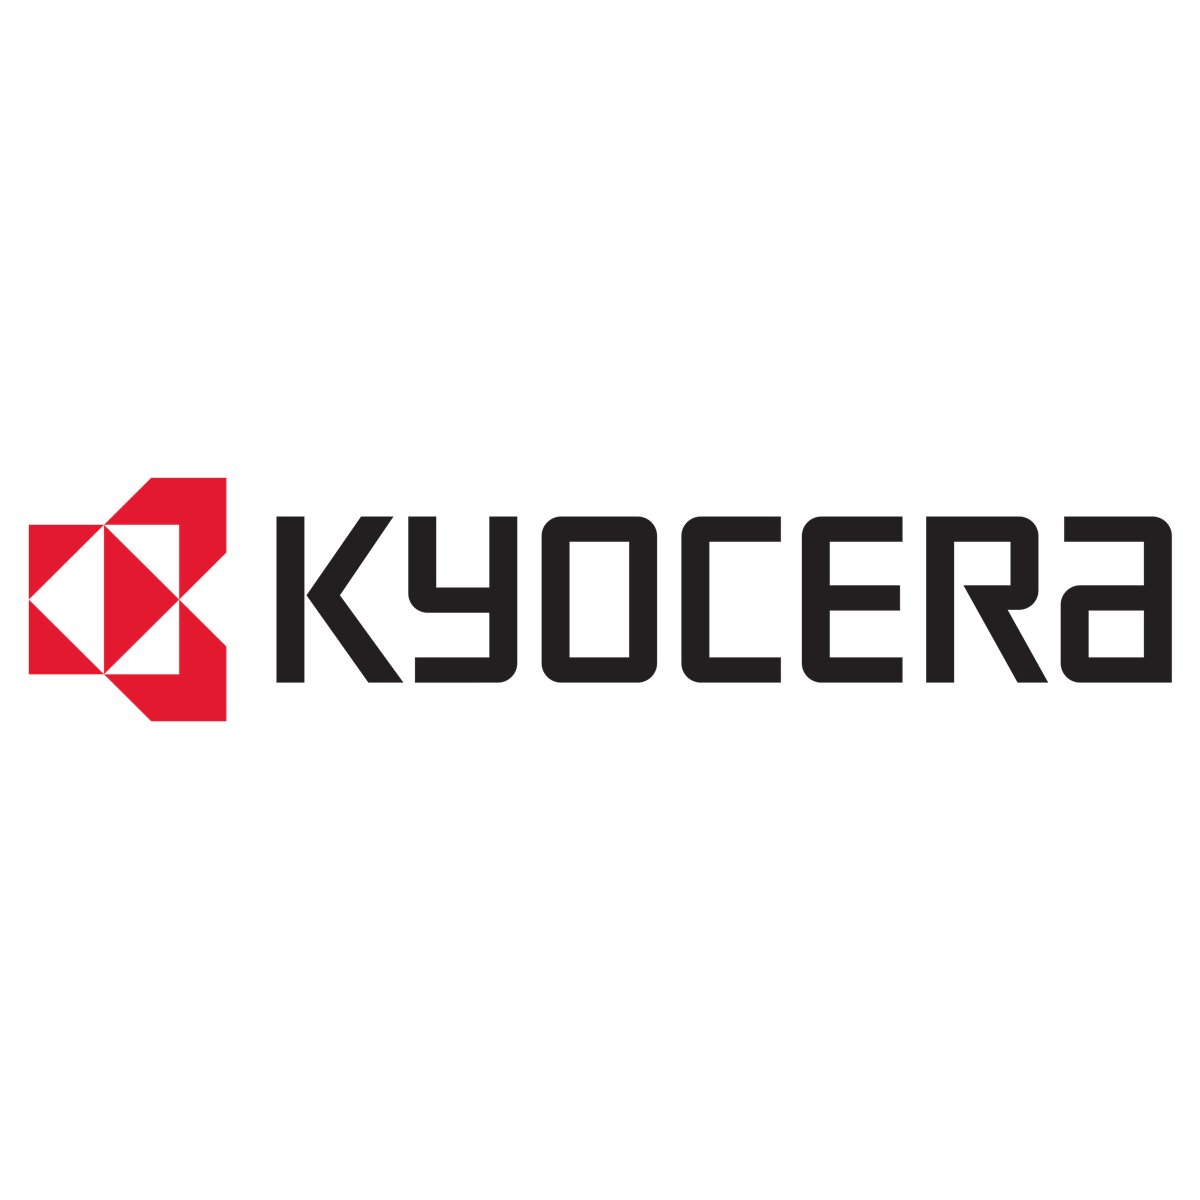 Kyocera FACE DOWN UNIT (2CK00230)